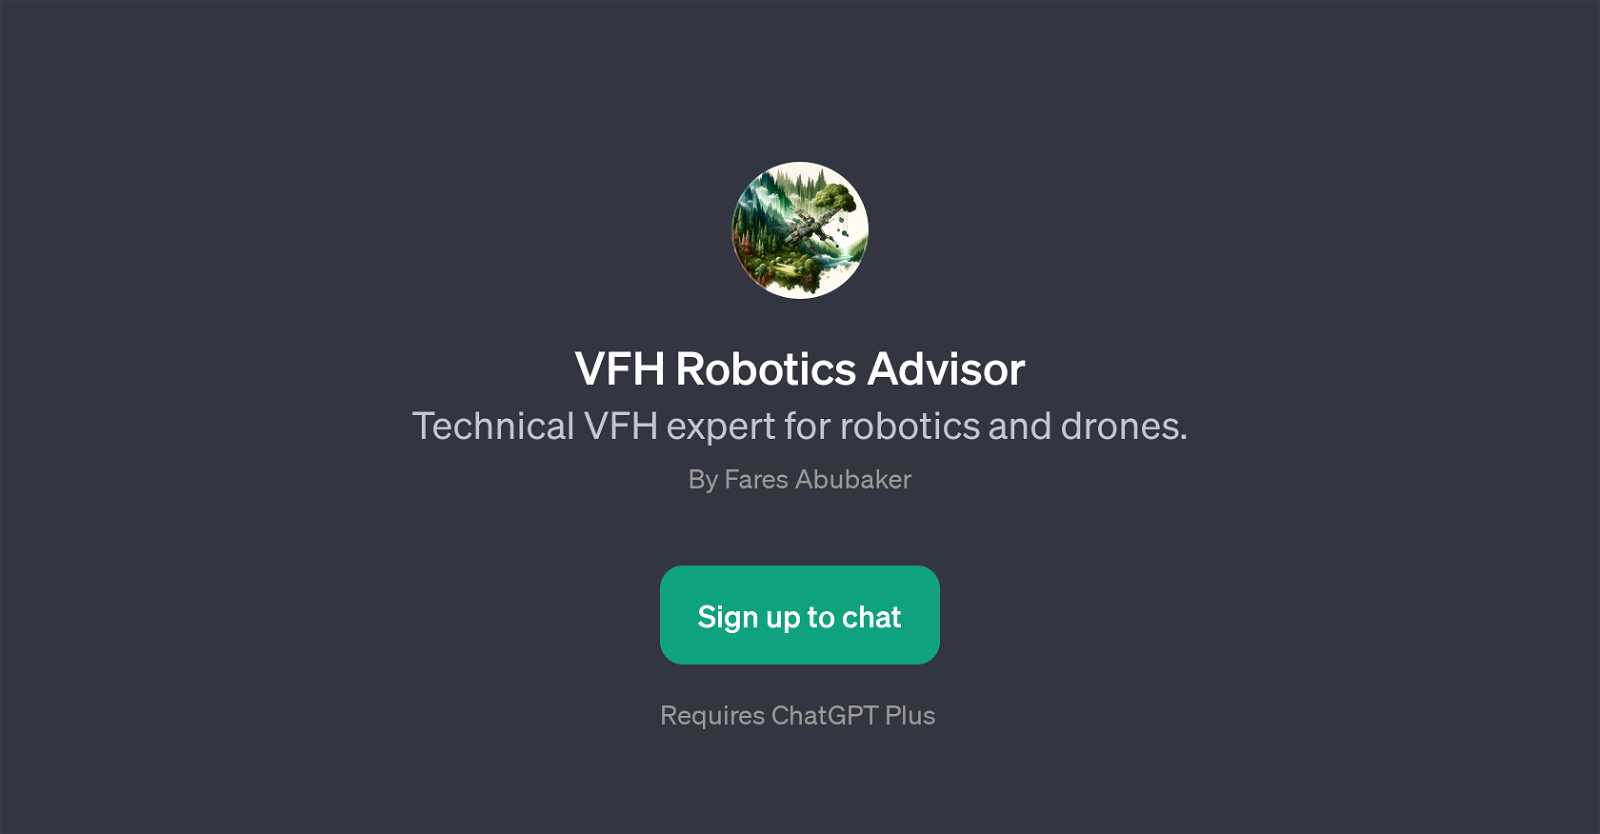 VFH Robotics Advisor website